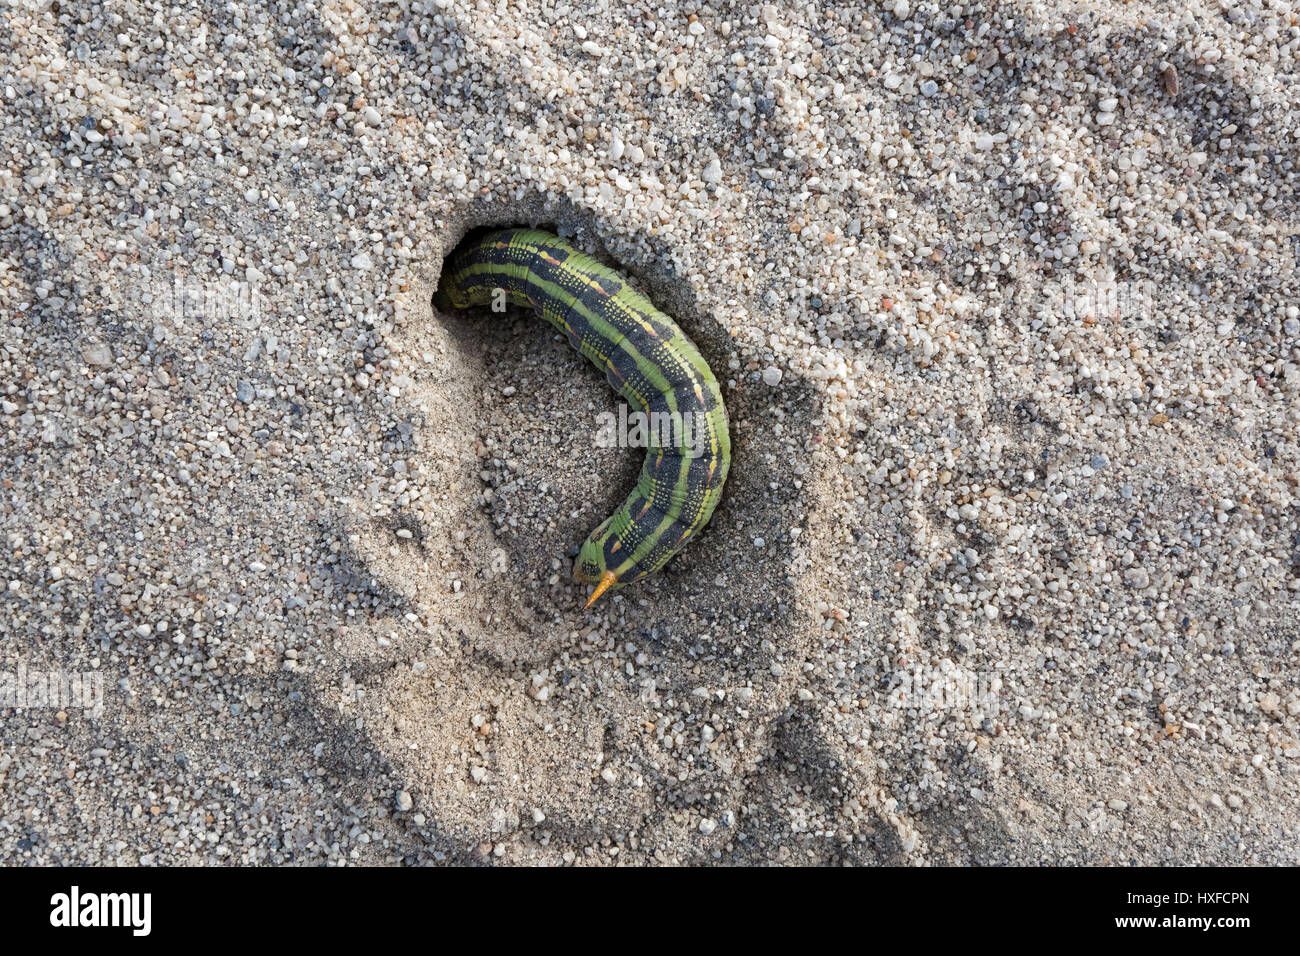 Bordée de blanc [sphinx hyles lineata] Caterpillar s'enfouissant dans le sable, de Californie du Sud Banque D'Images